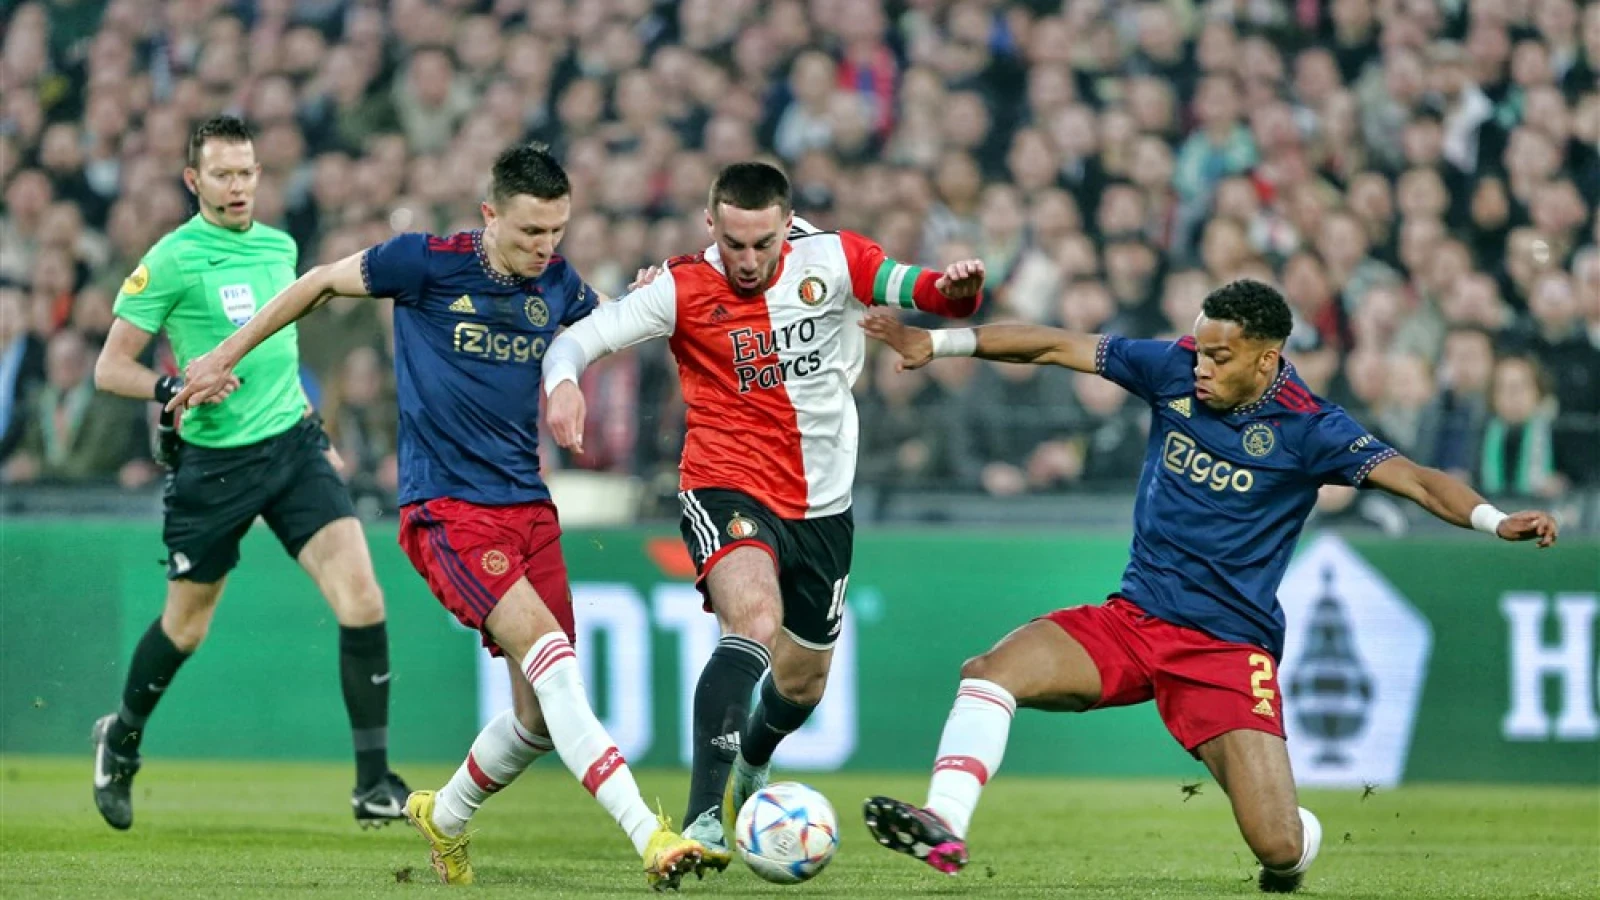 LIVE | Feyenoord - Ajax 1-2 | Einde wedstrijd